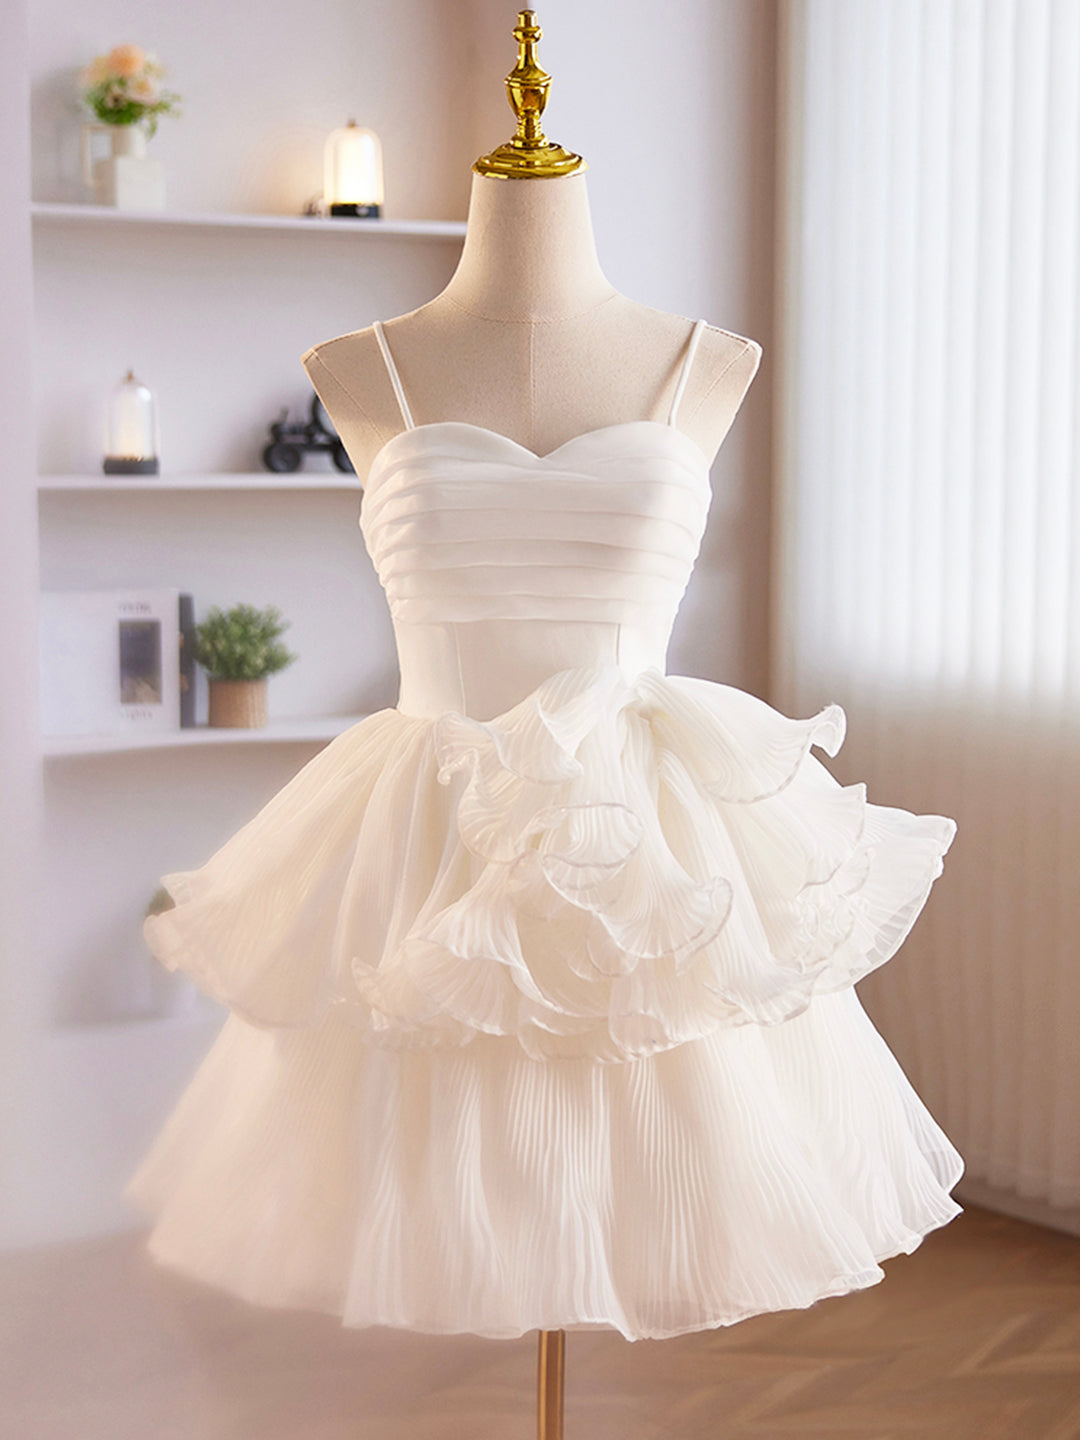 White Tulle Sweetheart Short Corset Prom Dress, White Tulle Straps Party Dress Outfits, Party Dresses For Girl